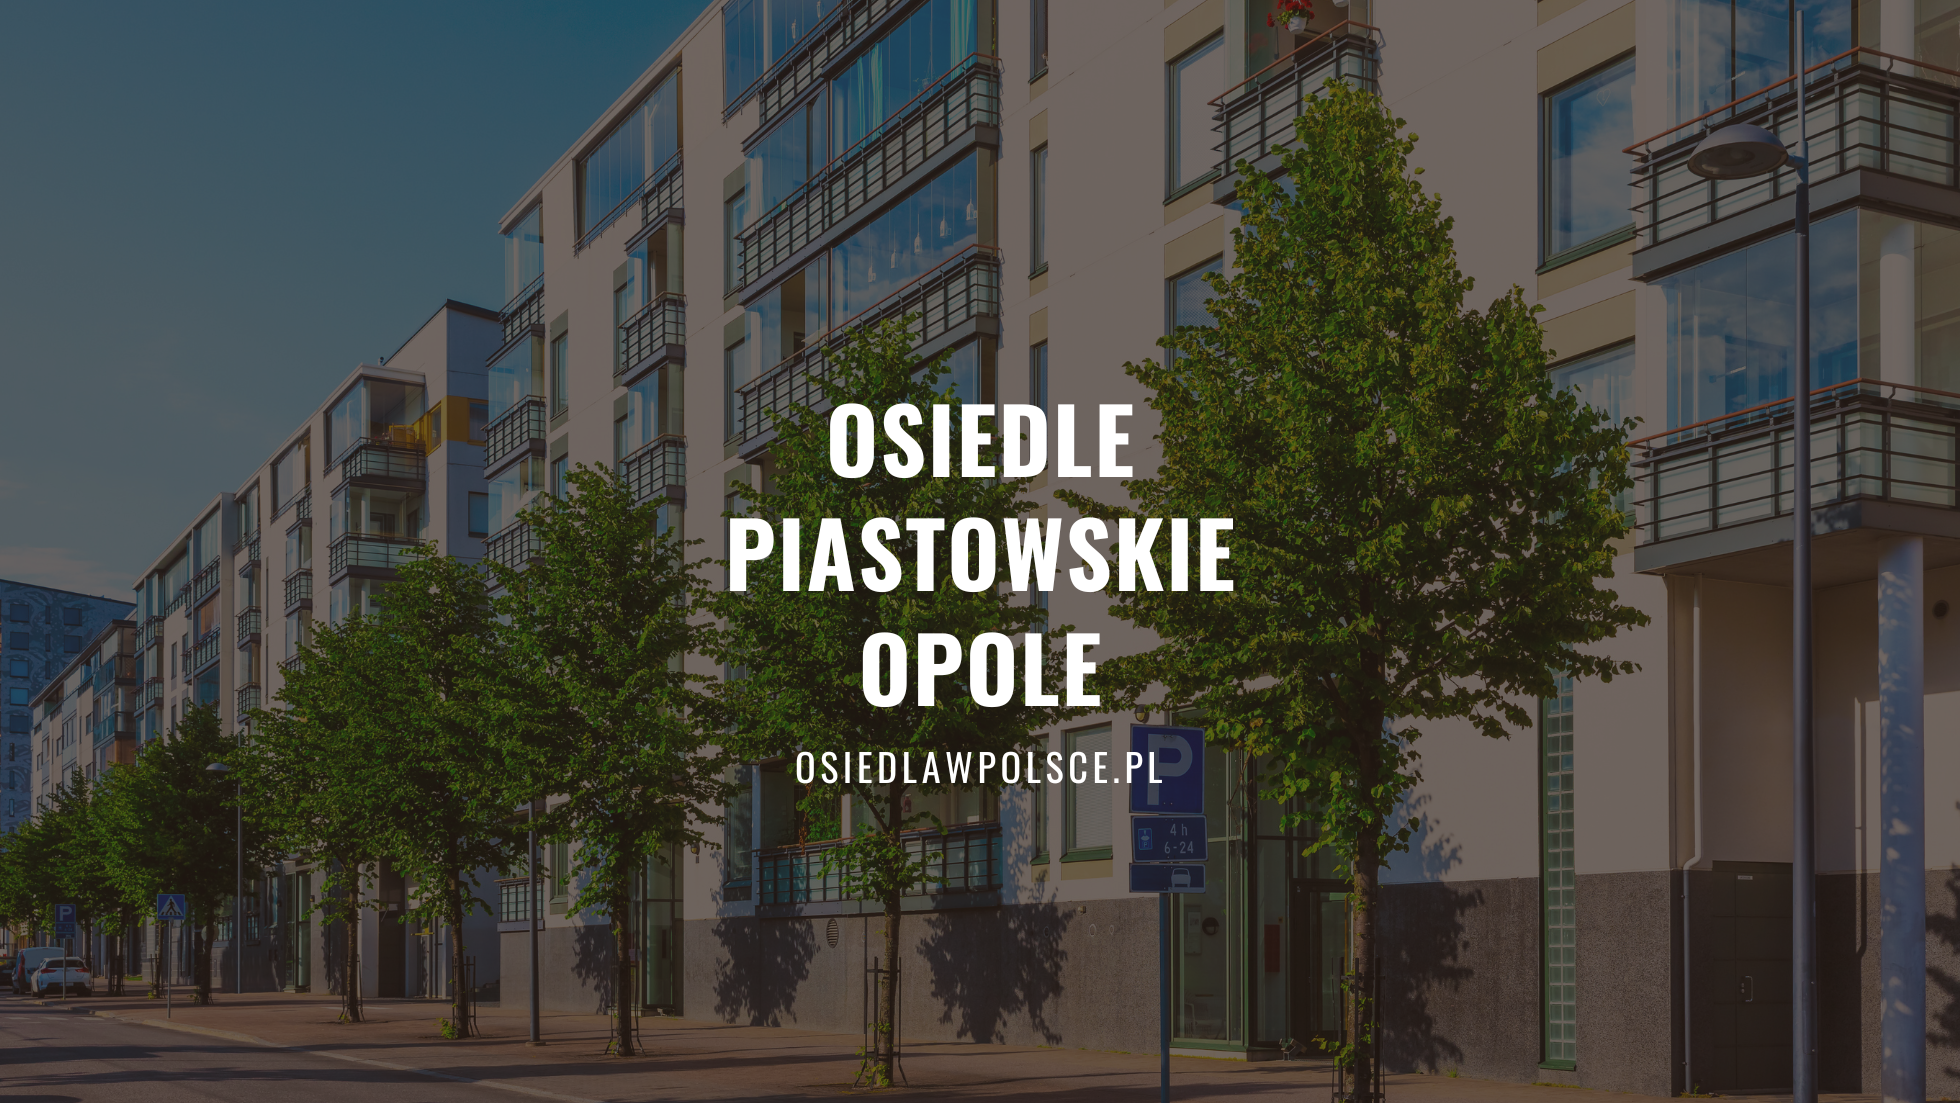 Piastowskie Opole